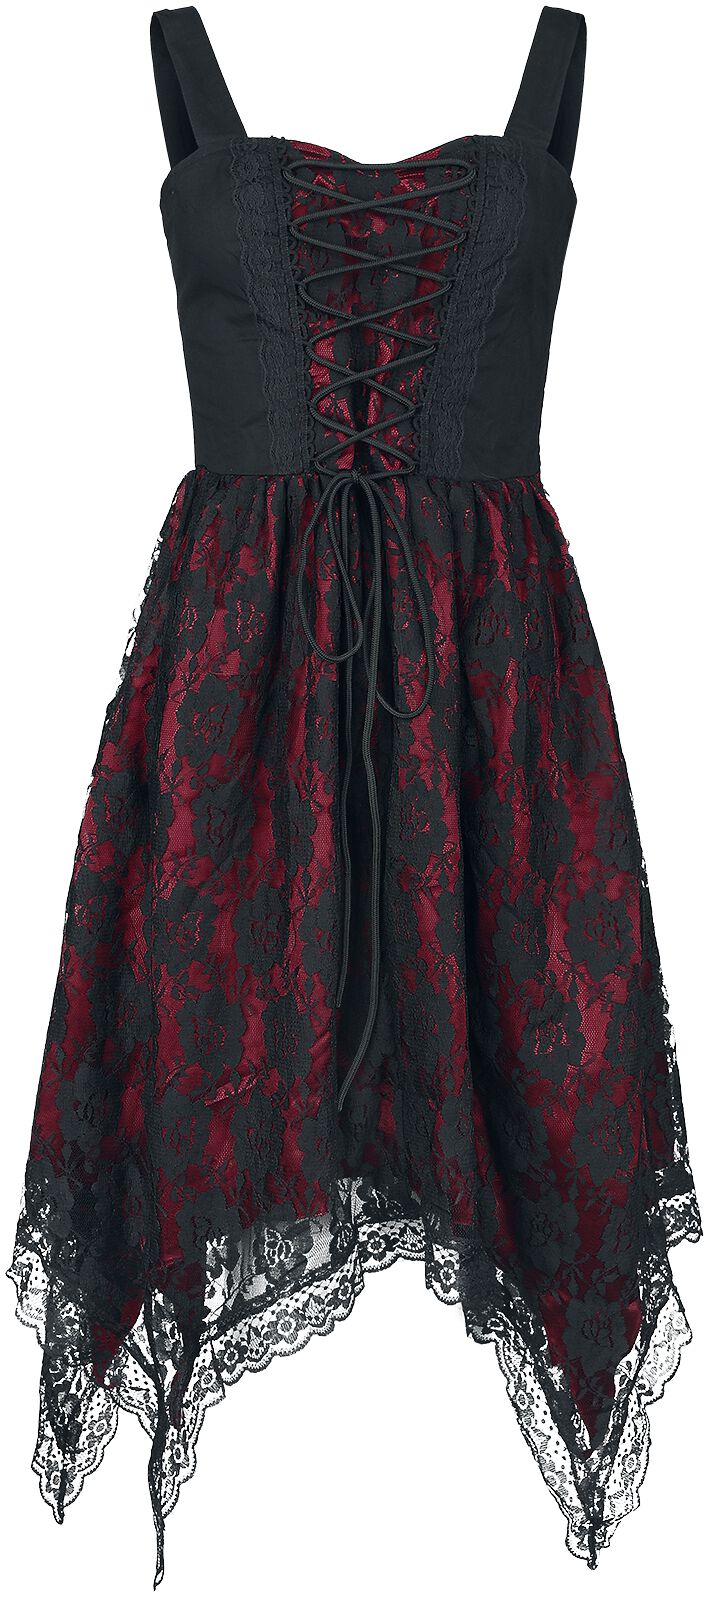 Gothicana by EMP Kleid mit Spitze und Zipfelsaum Kurzes Kleid schwarz rot in S